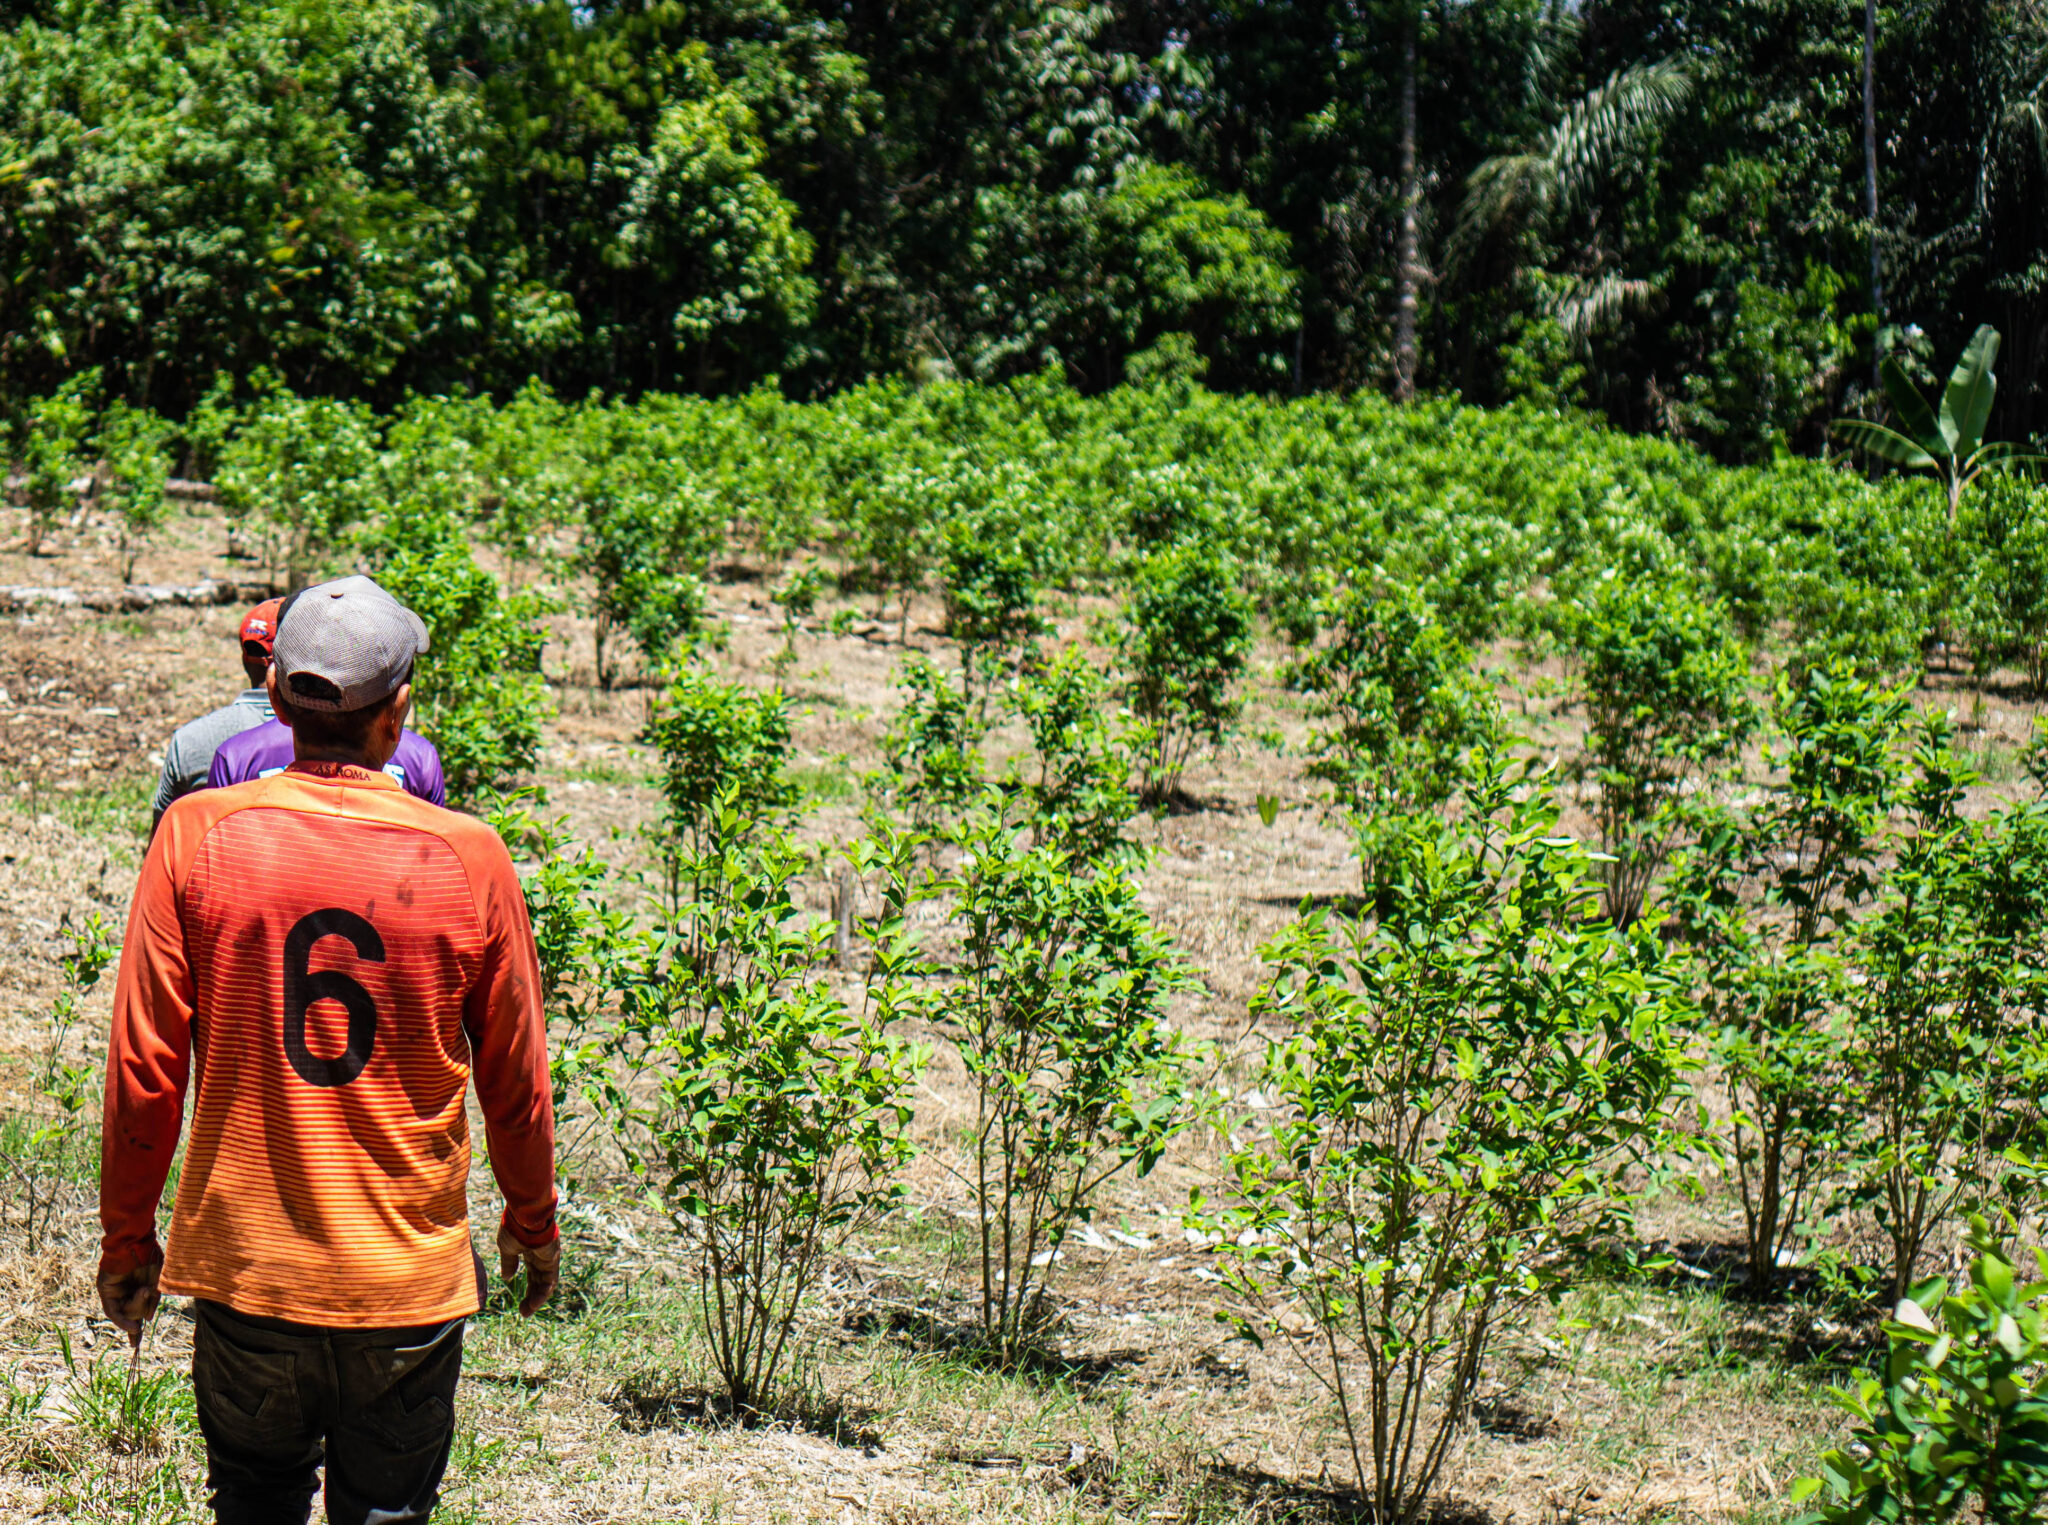 Los cultivos de coca mueven la economía local a ambos lados del río Putumayo. Crédito: Bram Ebus.